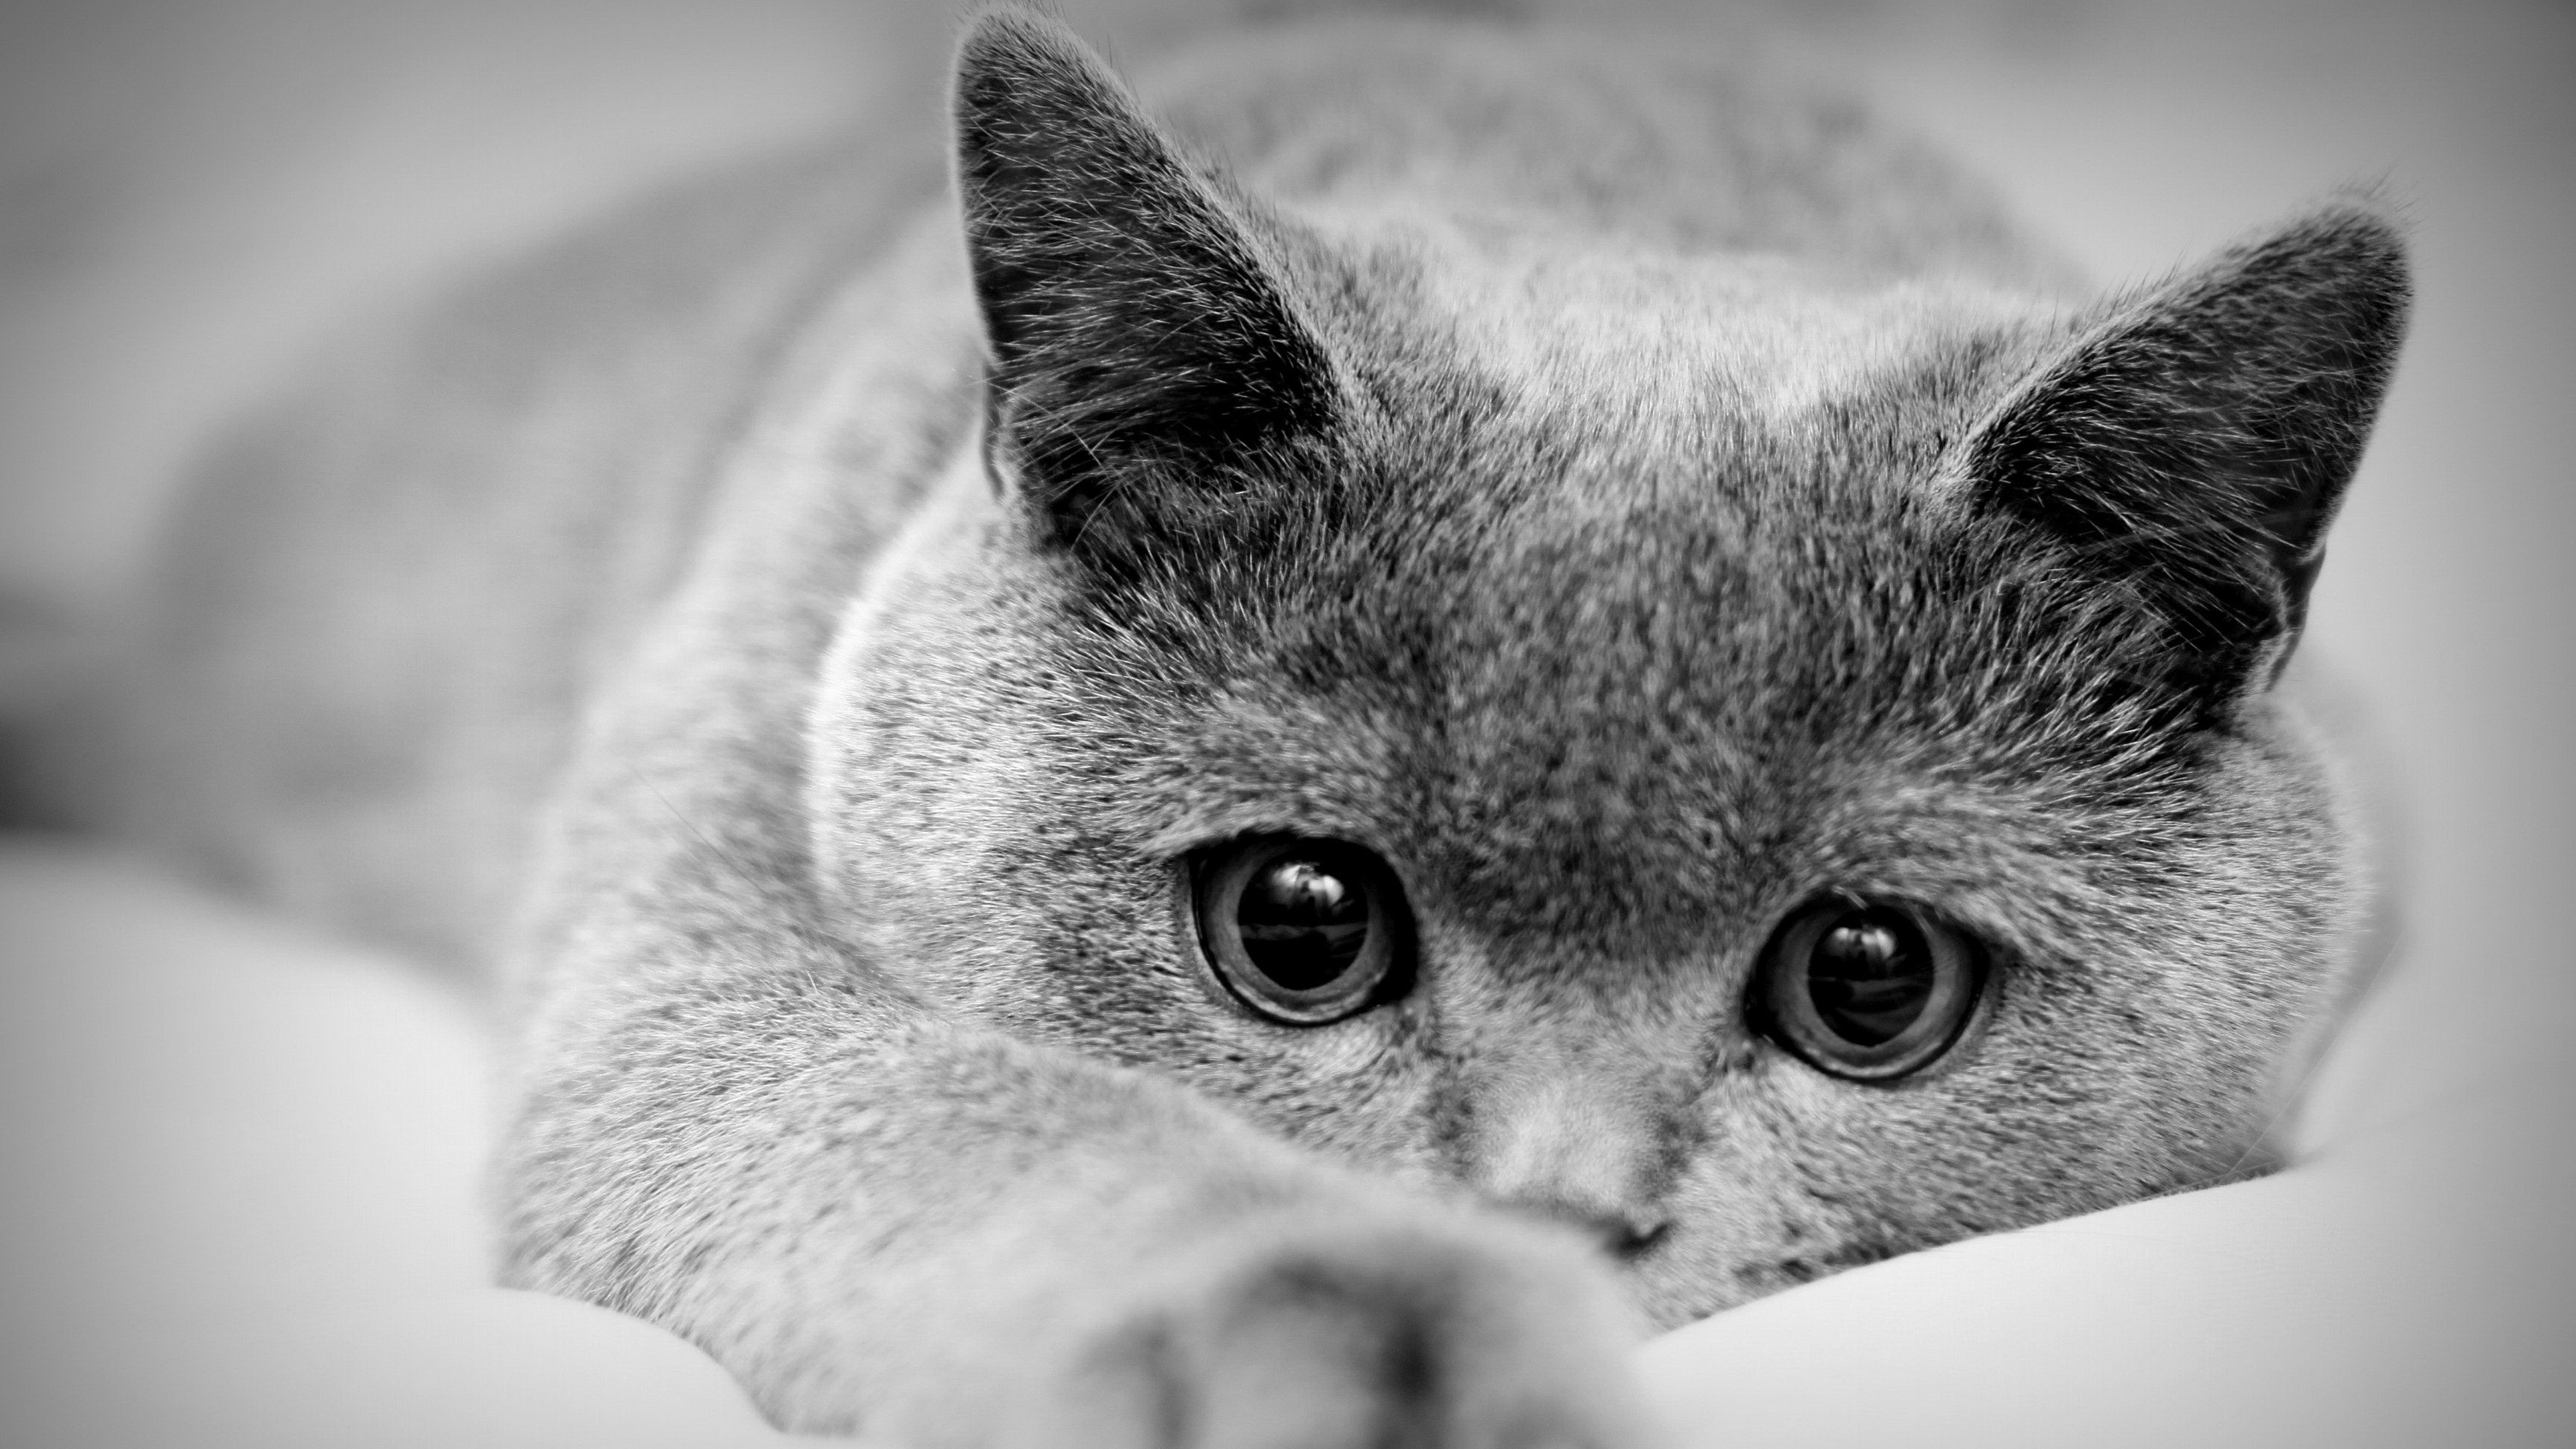 Можно картинки. Красивые черно белые картинки. Красивая картинка чеонобел. Грустная кошка. Скучающий кот.